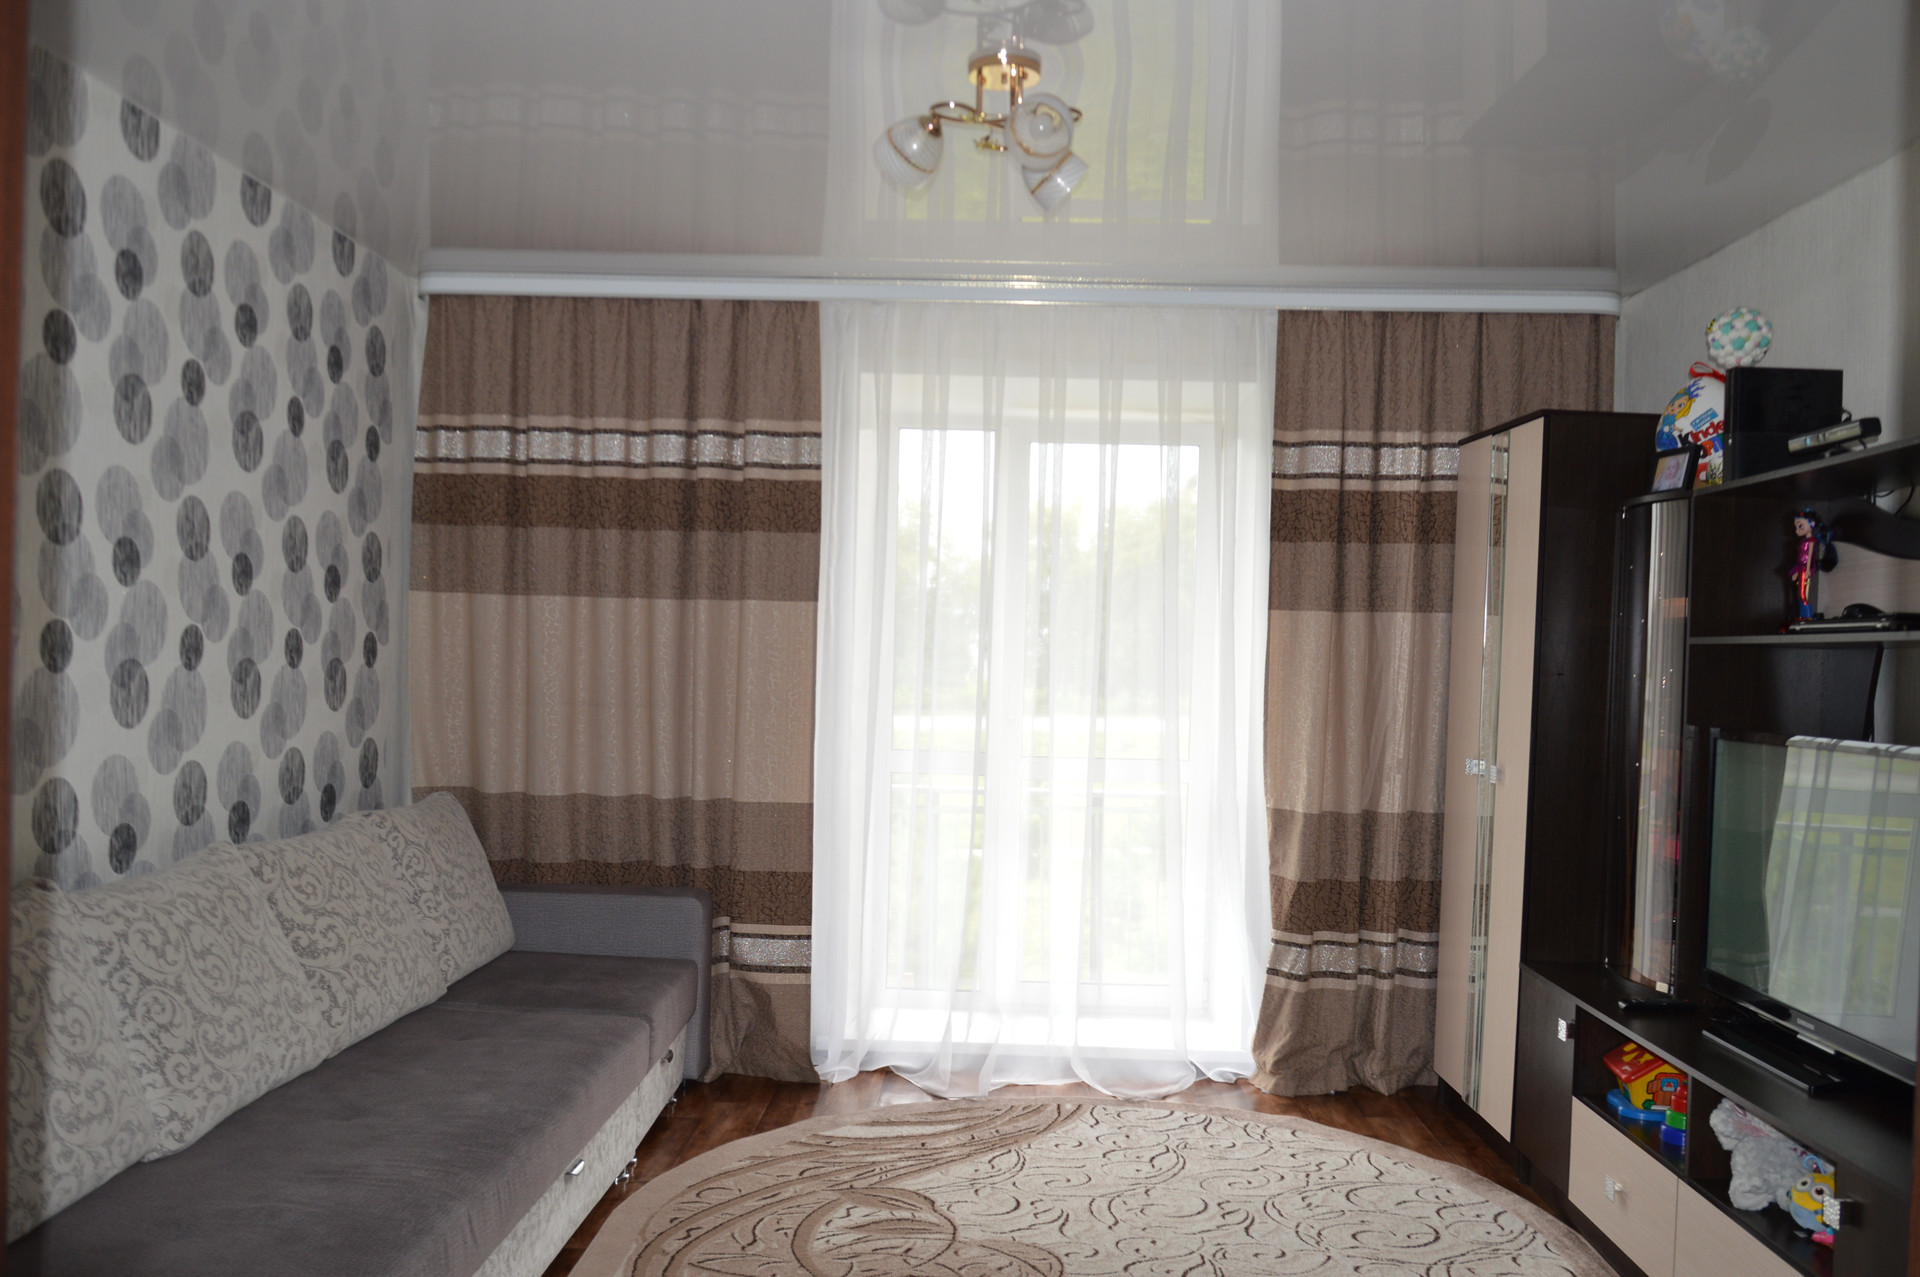 Купить квартиру в Полысаево 2 комнатную